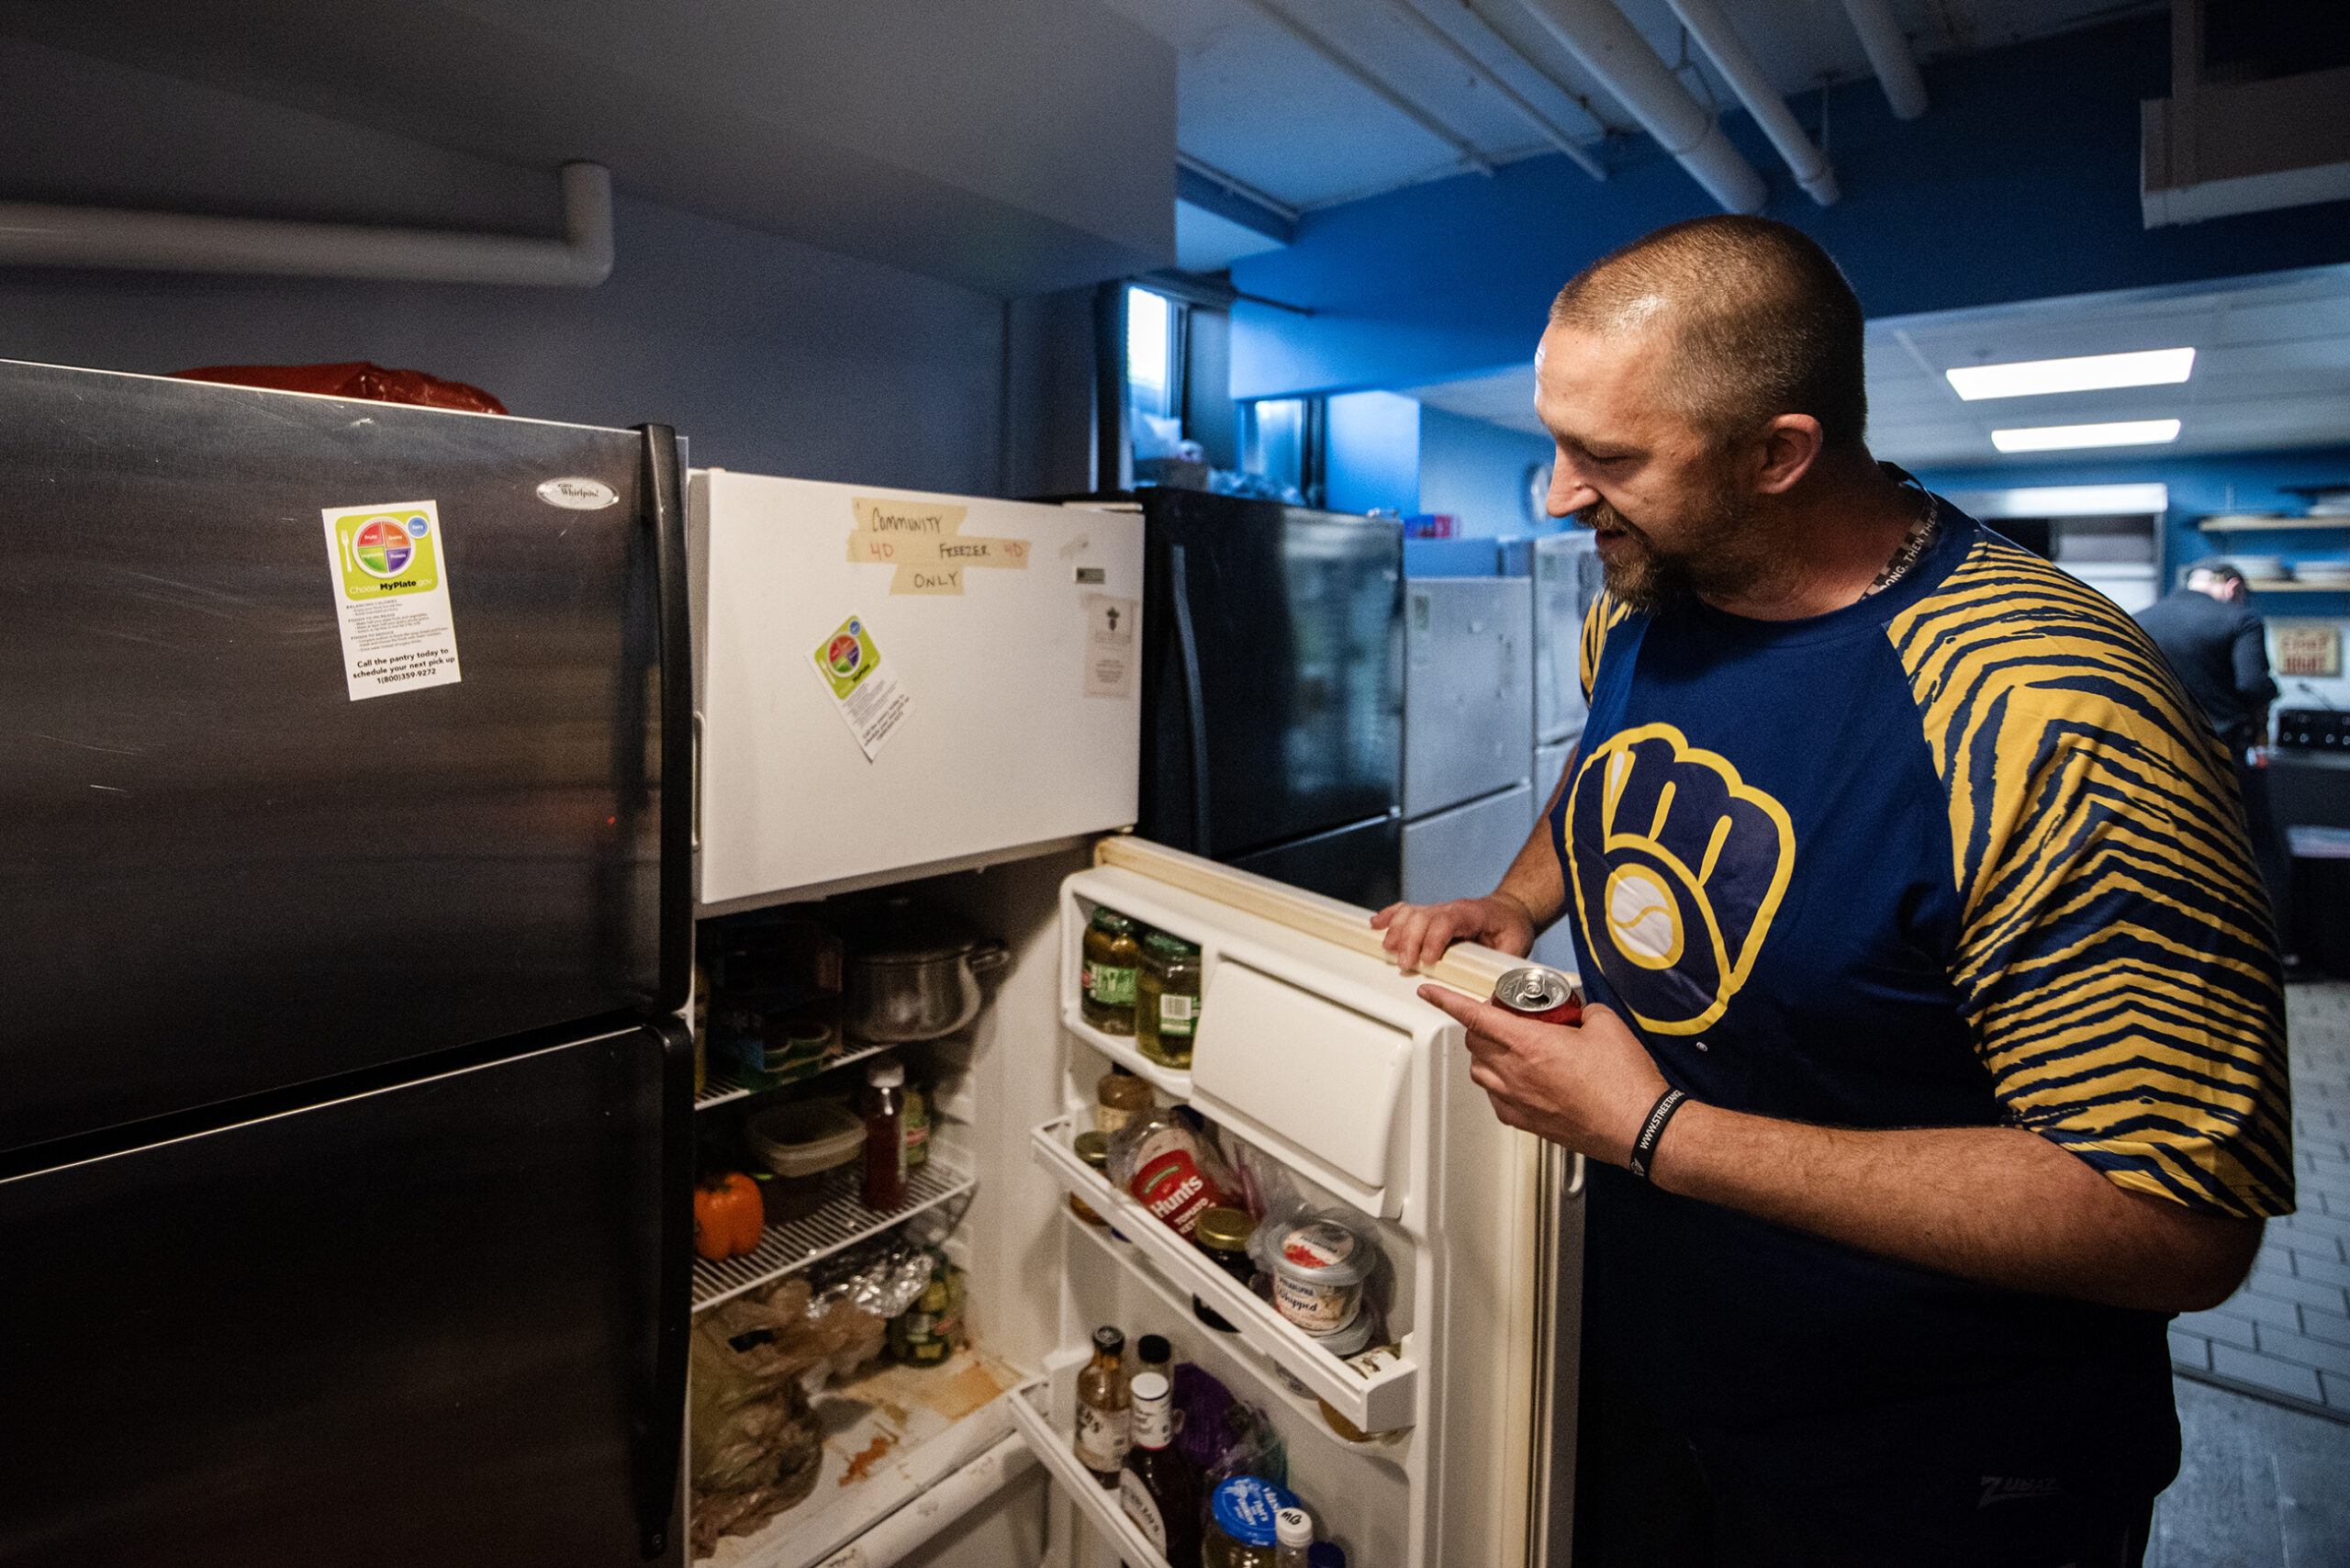 A man gestures as he opens a refrigerator door.